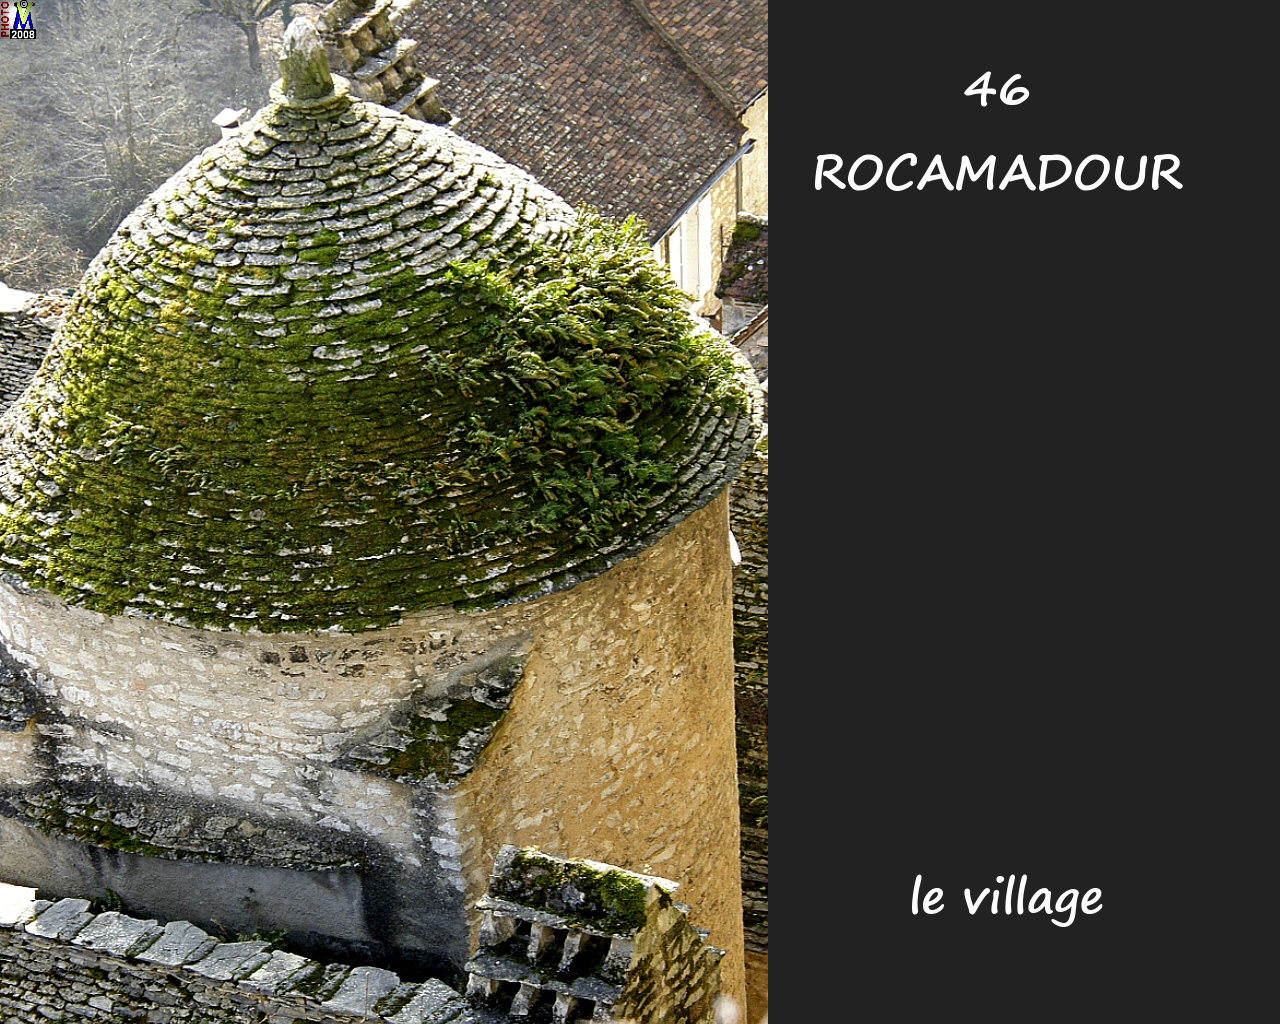 46ROCAMADOUR_village_182.jpg